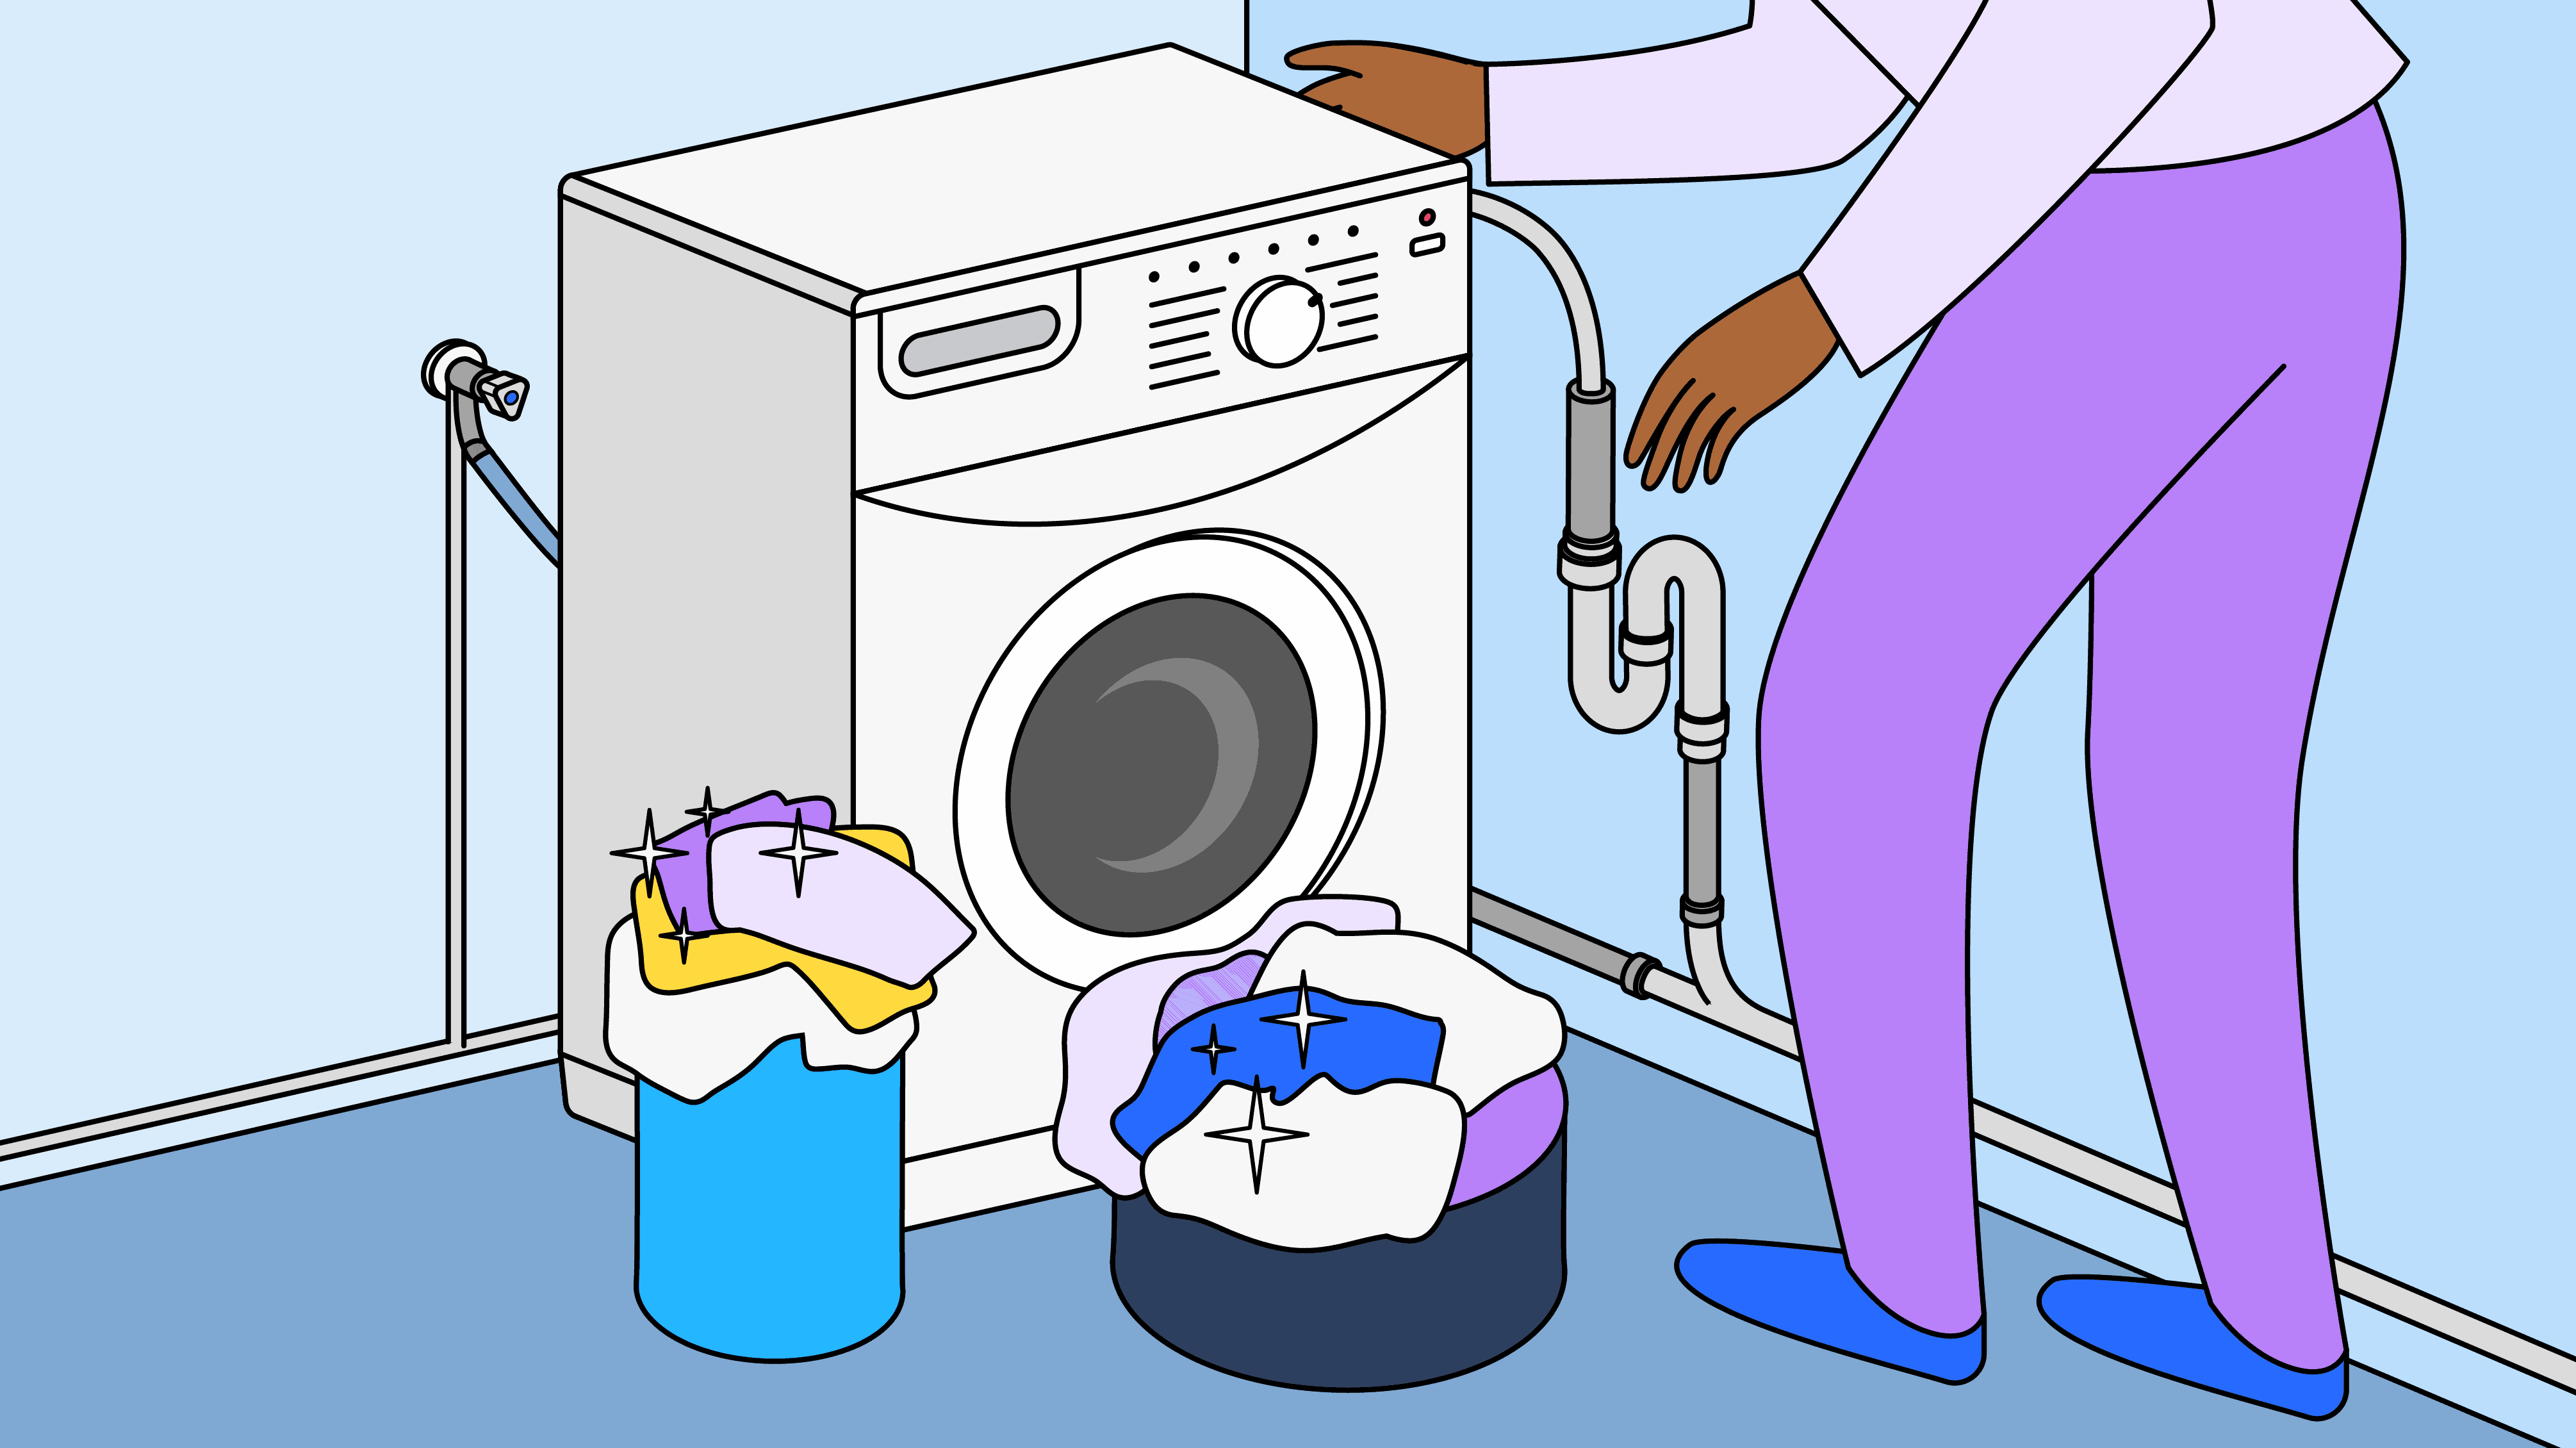 Banchement et évacuation d'une machine à laver